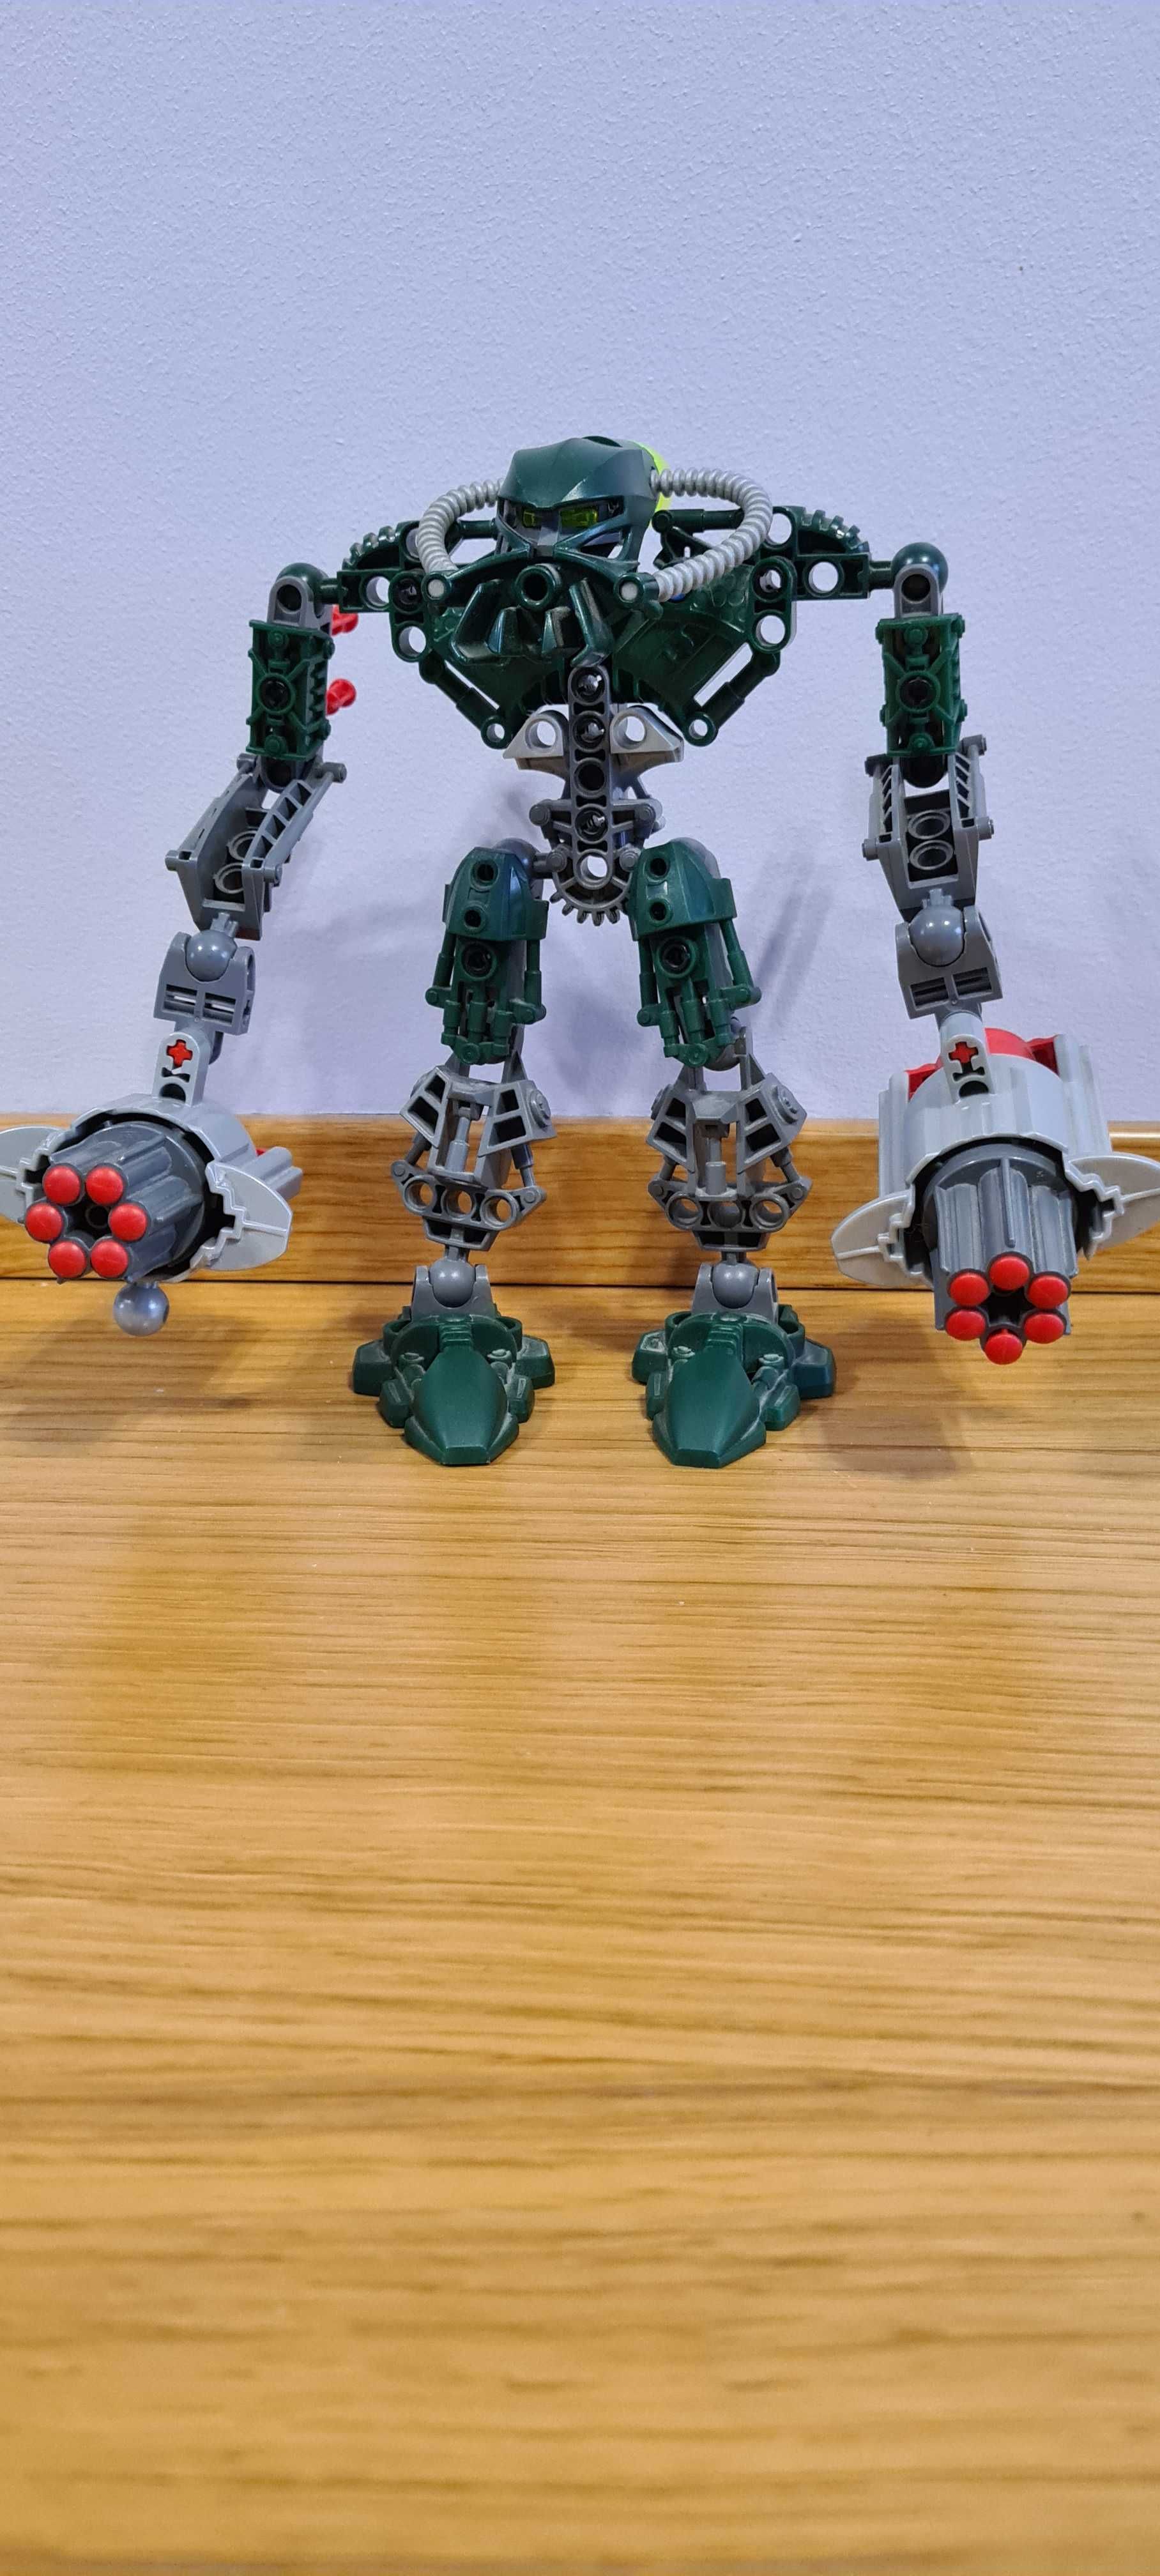 Zestaw LEGO 8910 Bionicle